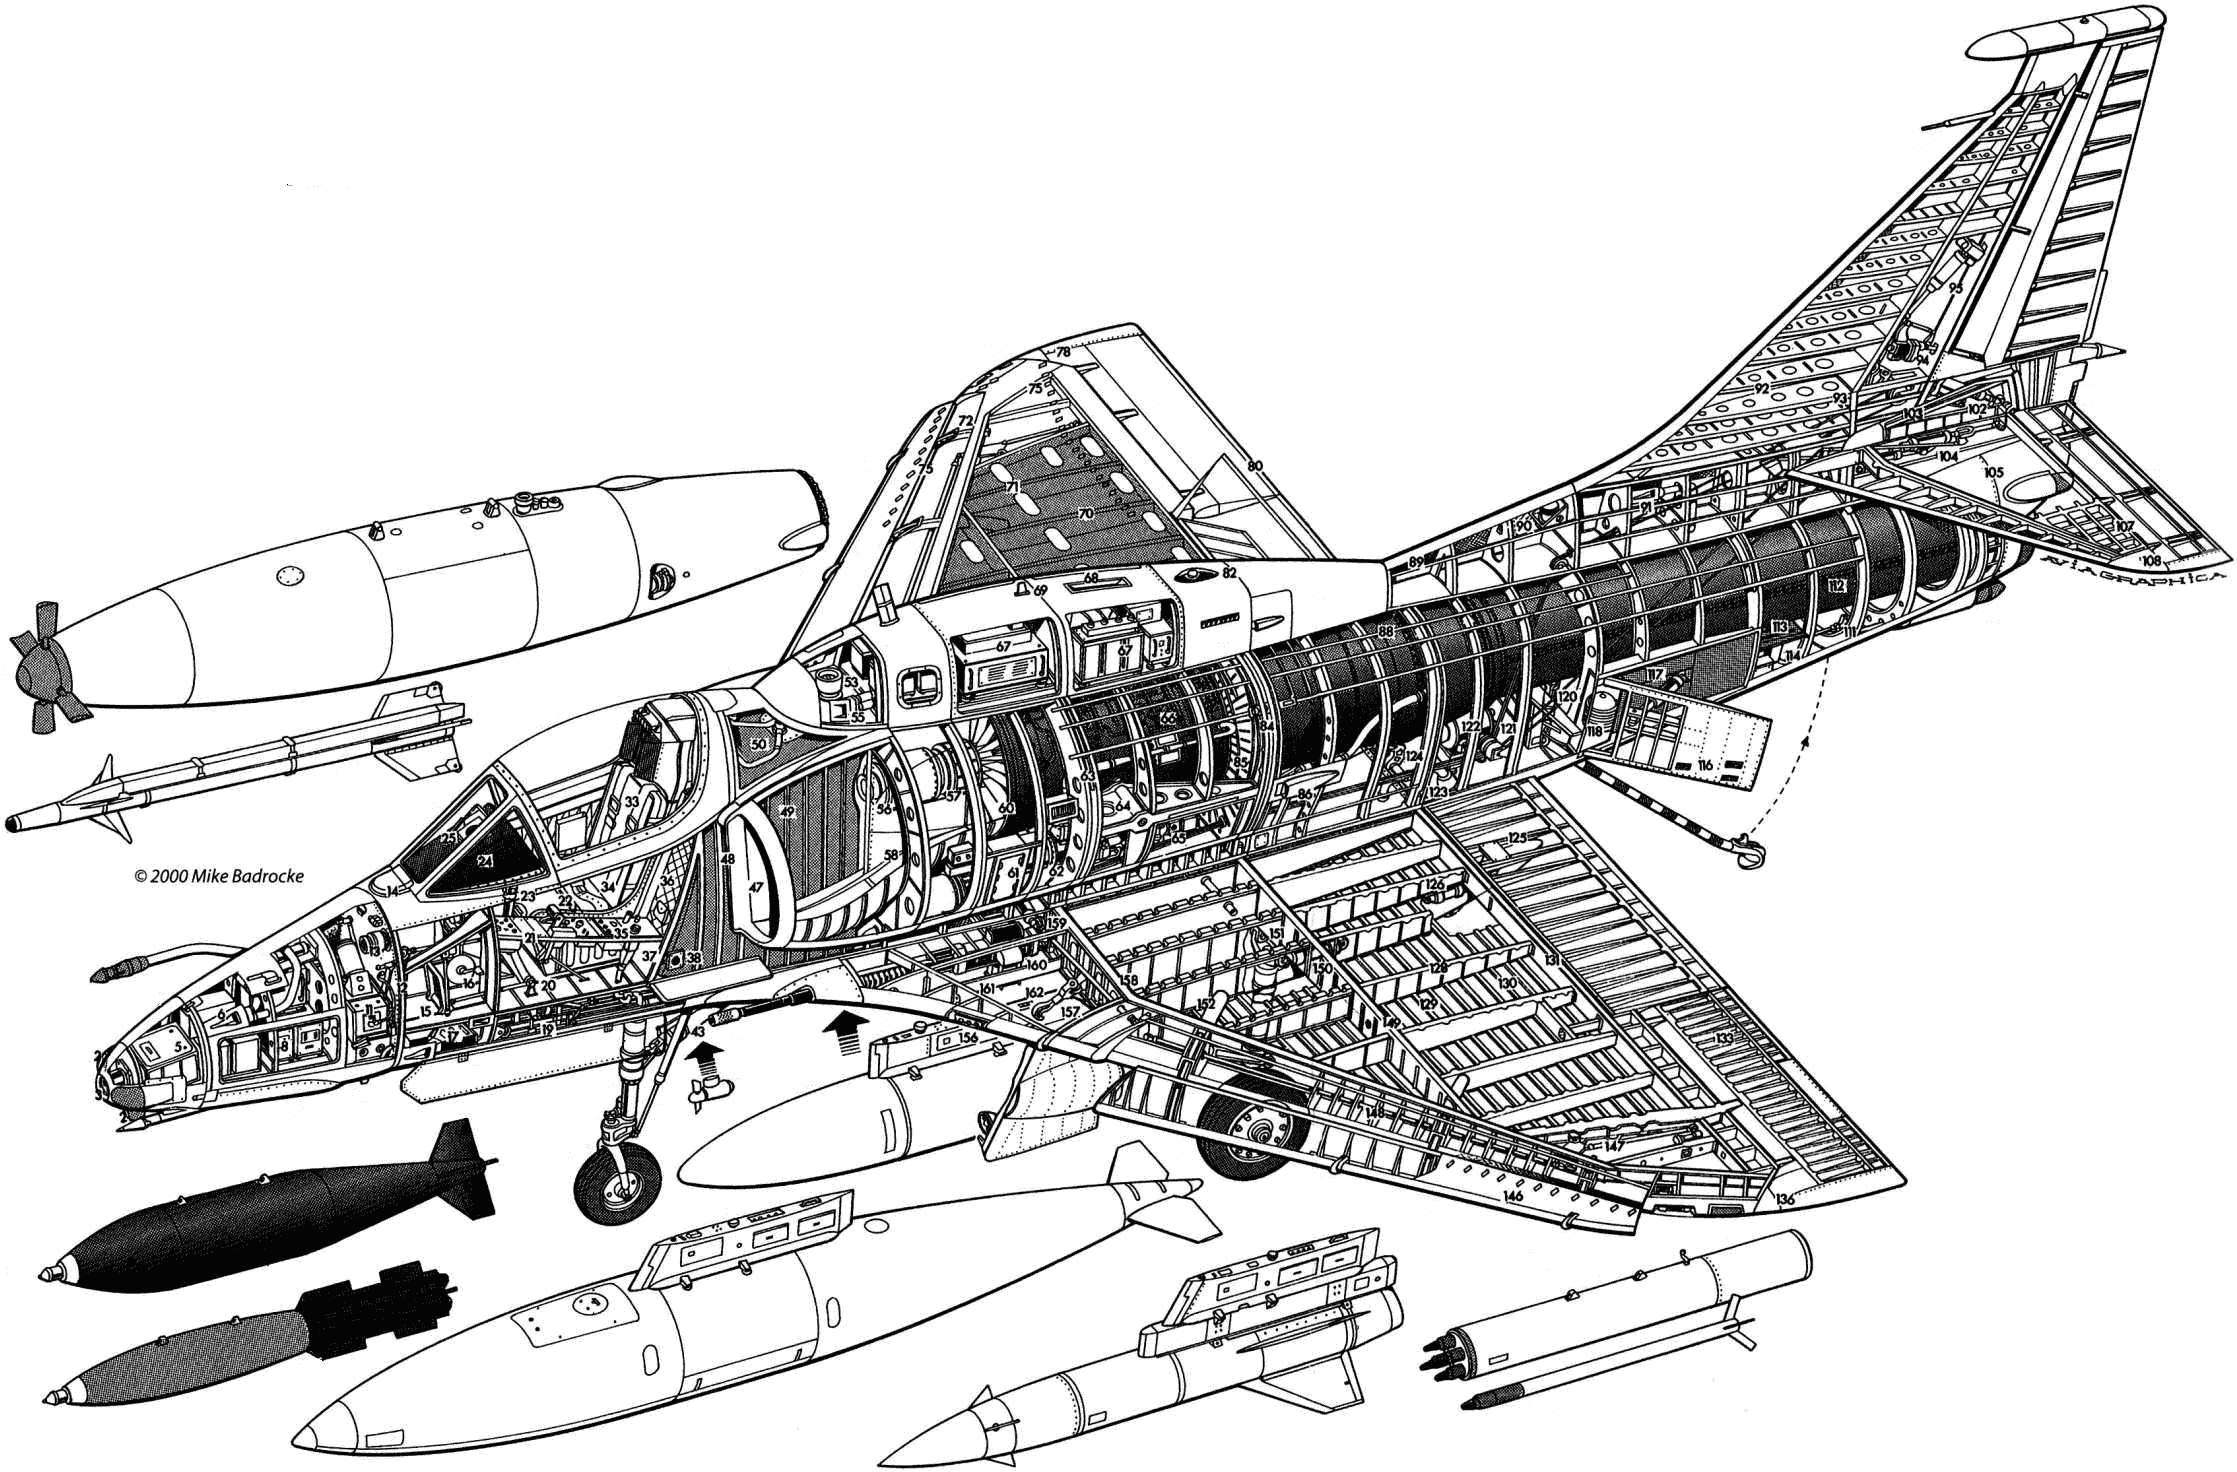 A-4 Skyhawk cutaway drawing